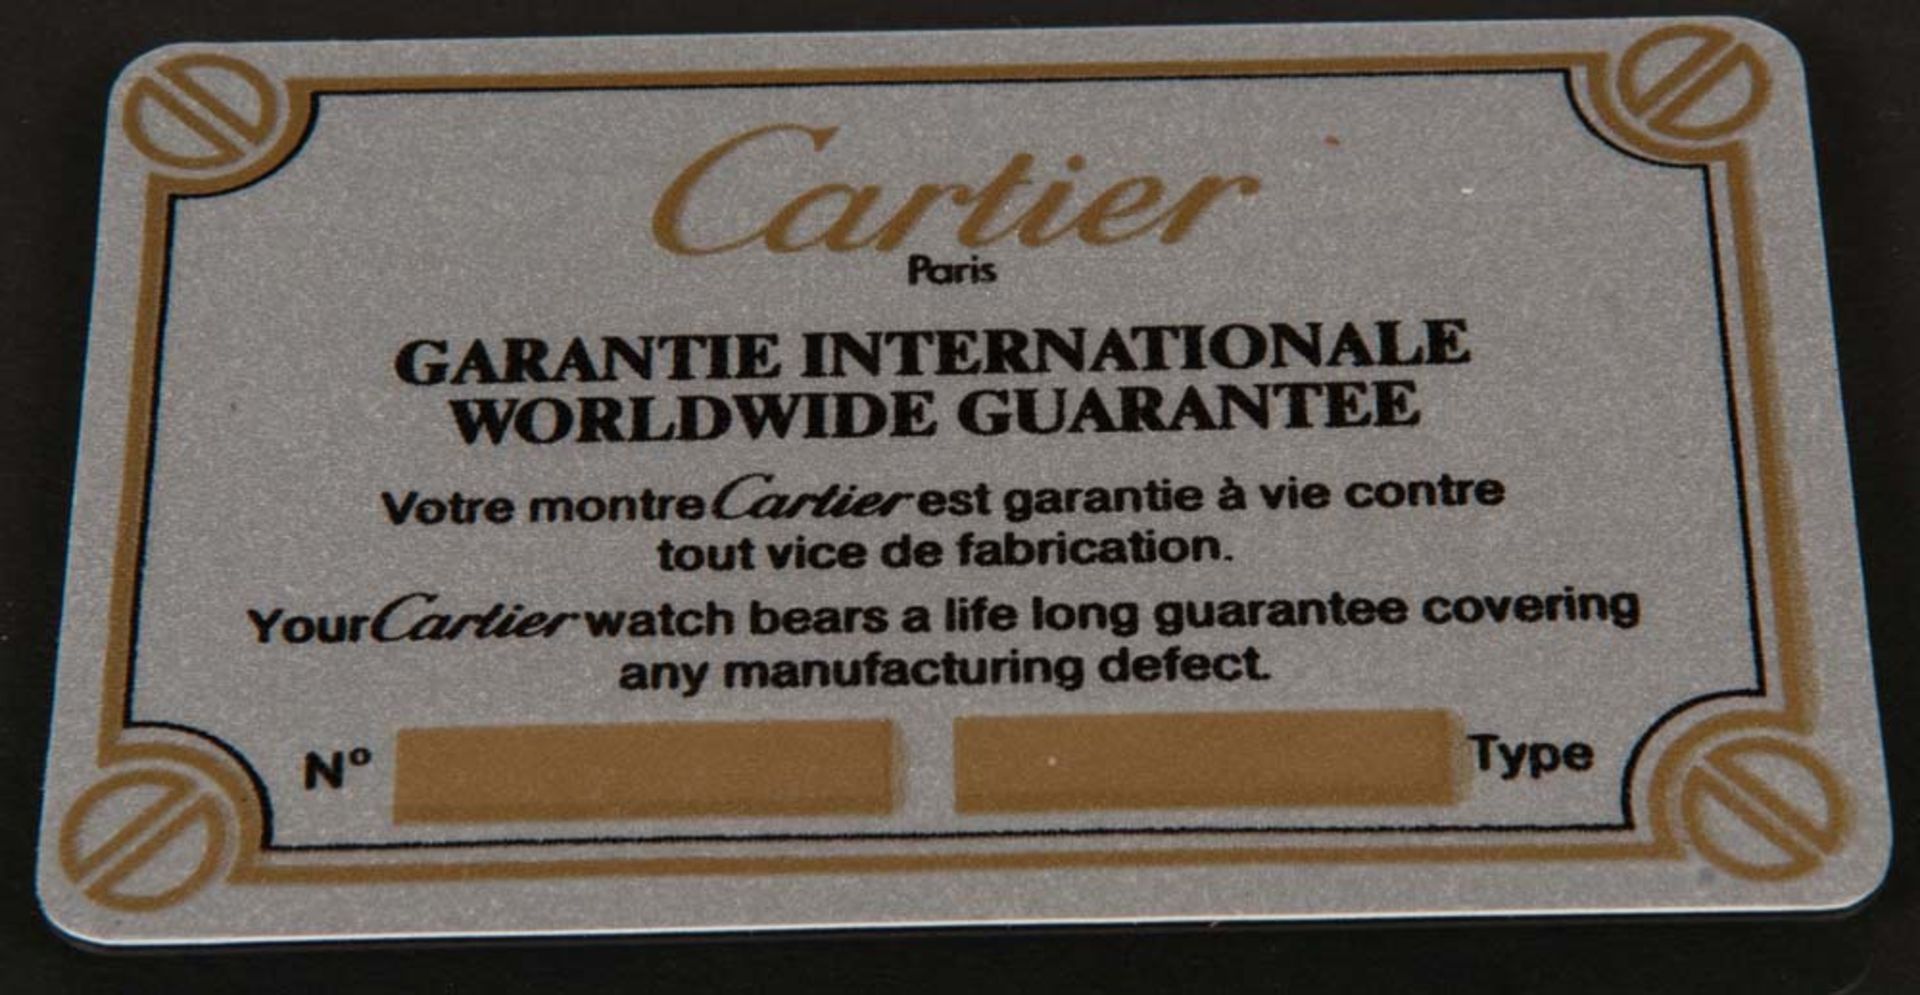 Cartier-Damenarmbanduhr. Gold / Stahl. Automatik, mit Garantiekarte. (Funktion ungeprüft) - Bild 3 aus 3